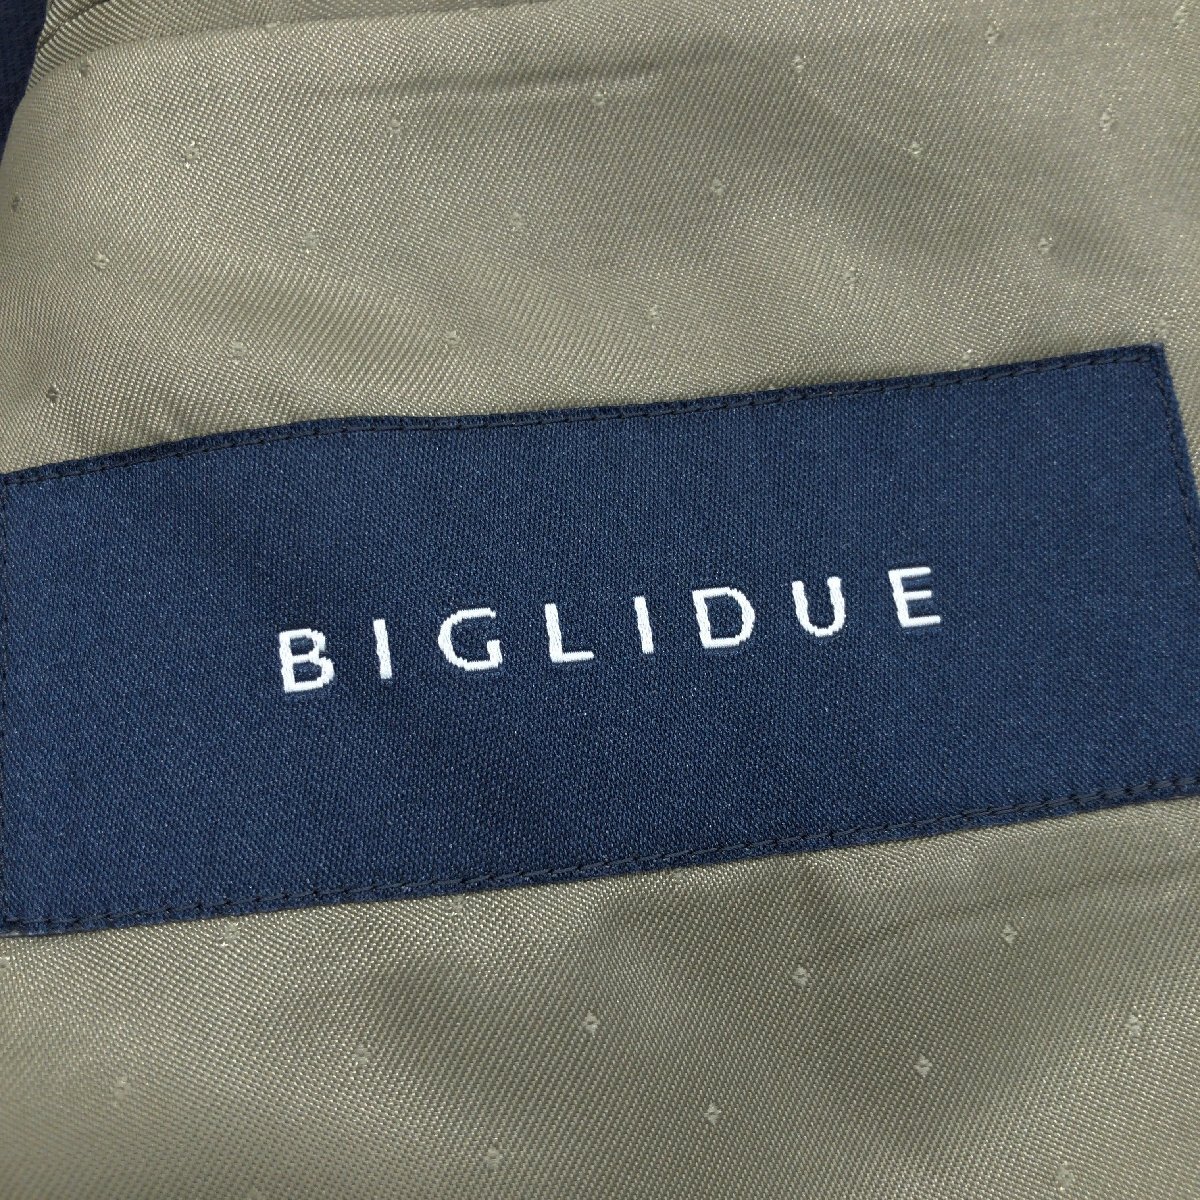 ●美品 BIGLIDUE ビリドゥーエ 2B シングルスーツ 上下セットアップ 98-A8(2XL相当) 濃紺 ジャケット パンツ 特大 大きいサイズ 3L メンズの画像3